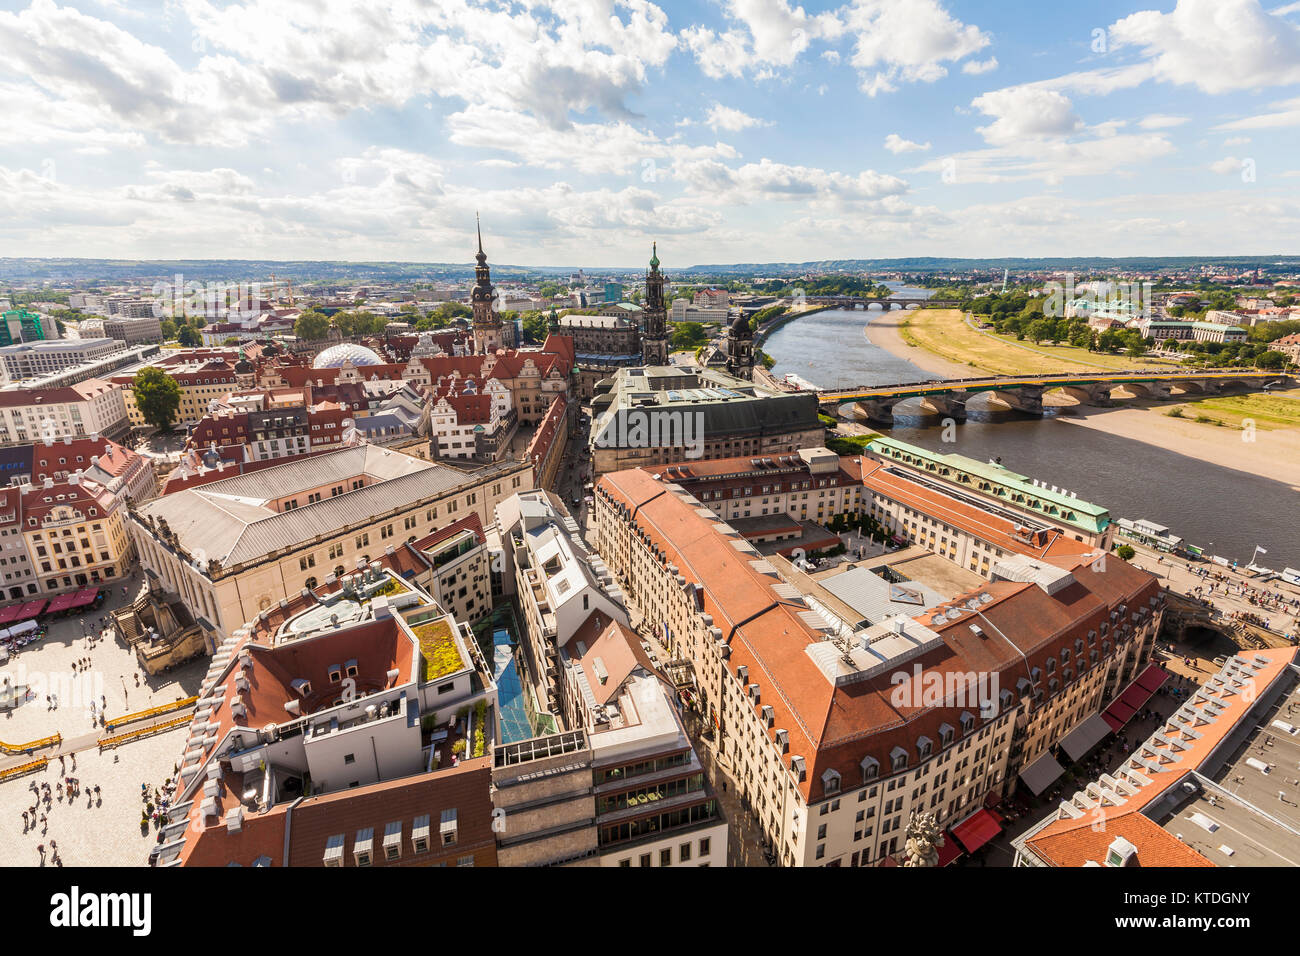 Deutschland, Sachsen, Dresden, Stadtansicht, Blick über Stadtzentrum, Elbe und Augustusbrücke Banque D'Images